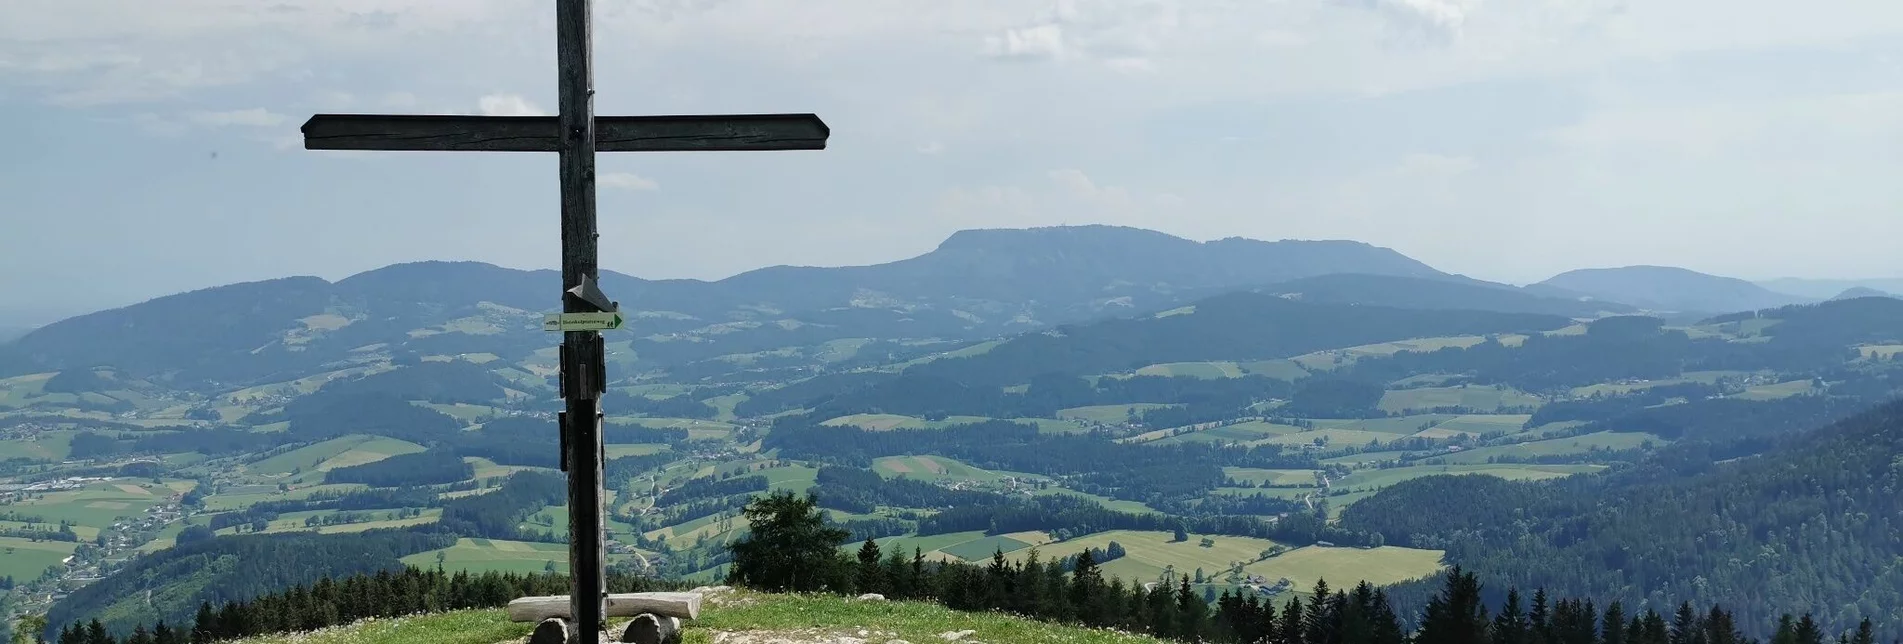 Hiking route Gerler Round from the Nechnitz - Touren-Impression #1 | © Oststeiermark Tourismus